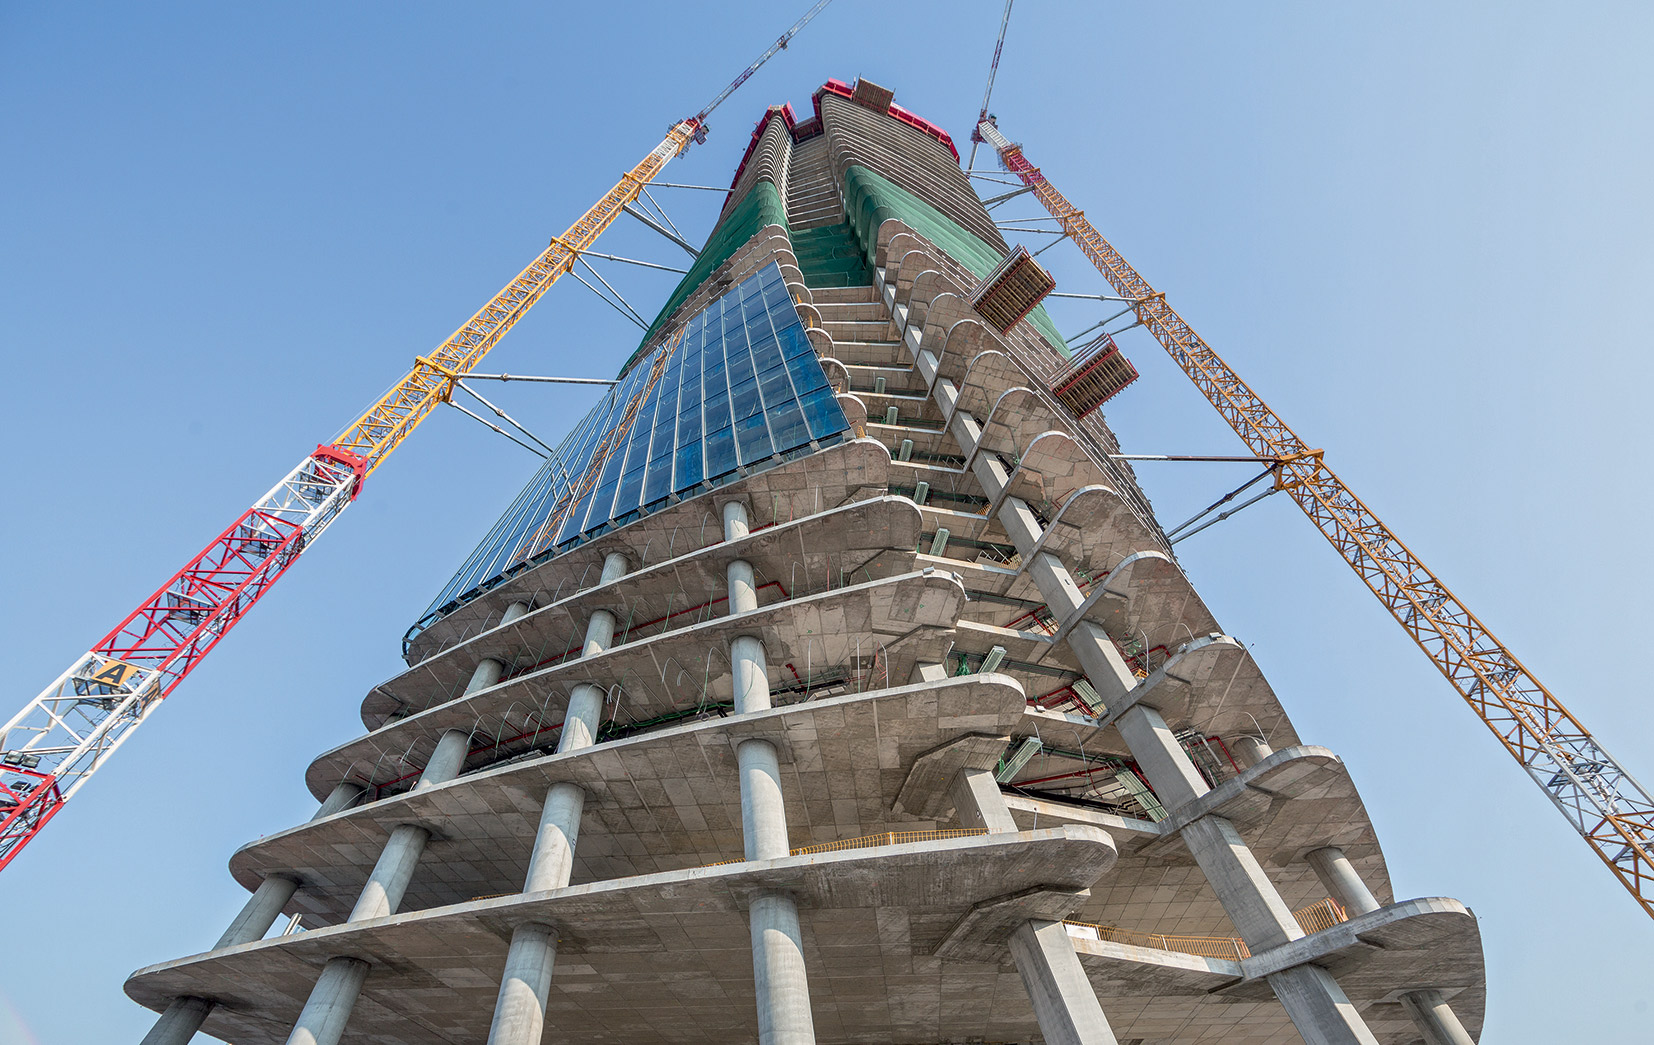 4 Architektonická podoba zkroucených výškových domů od Zahy Hadid. Stejně jako bytová zástavba patřící k milánskému projektu CityLife, je i 170 m vysoká budova dílem světoznámé architektky Zahy Hadid.